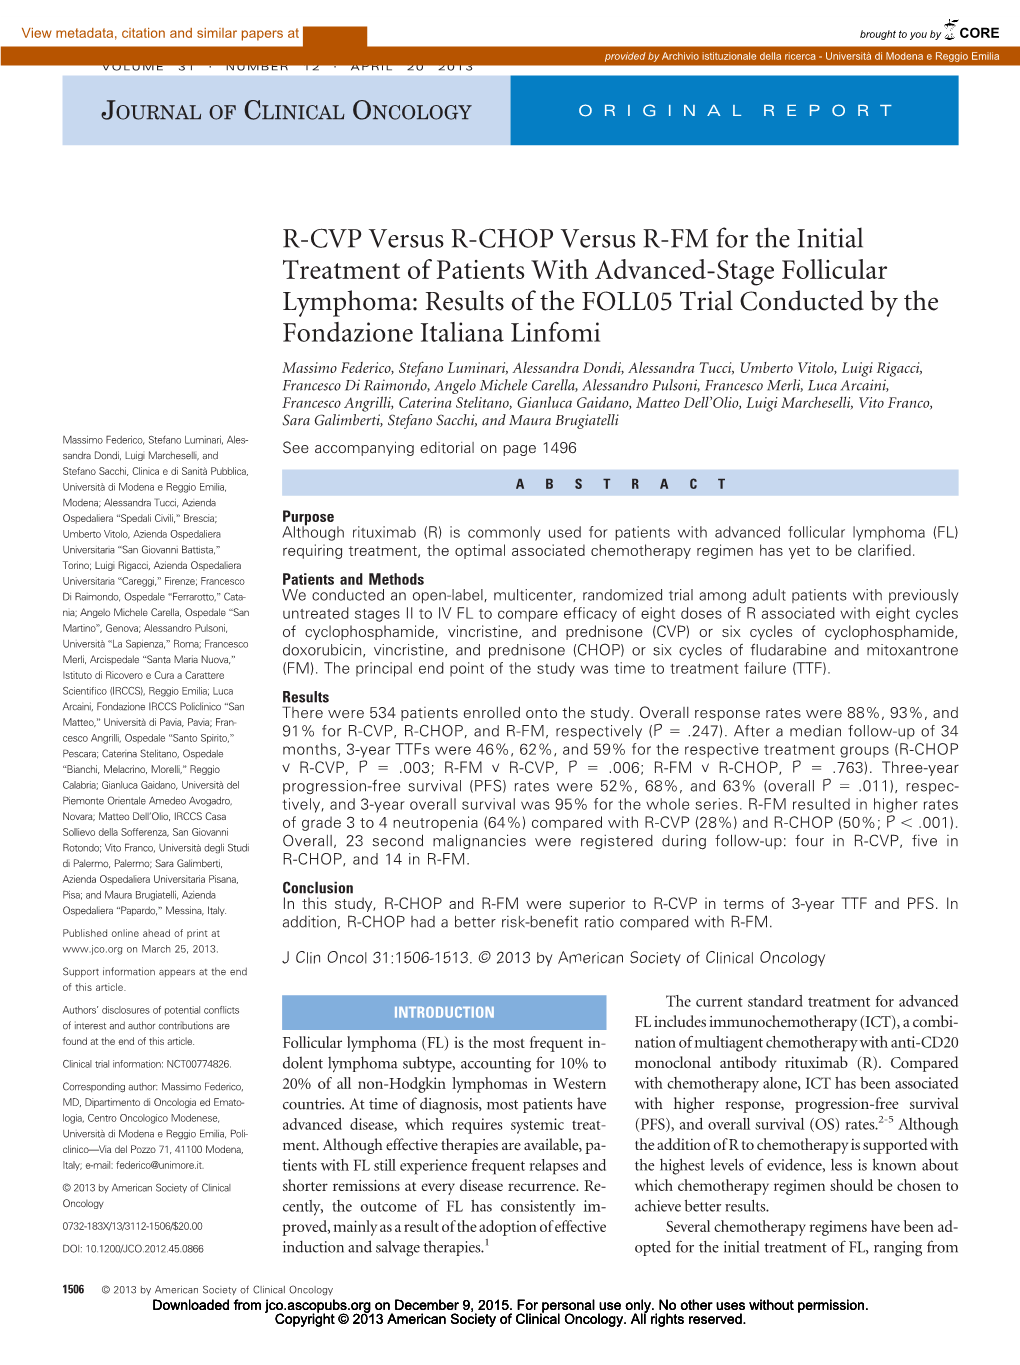 R-CVP Versus R-CHOP Versus R-FM for the Initial Treatment of Patients